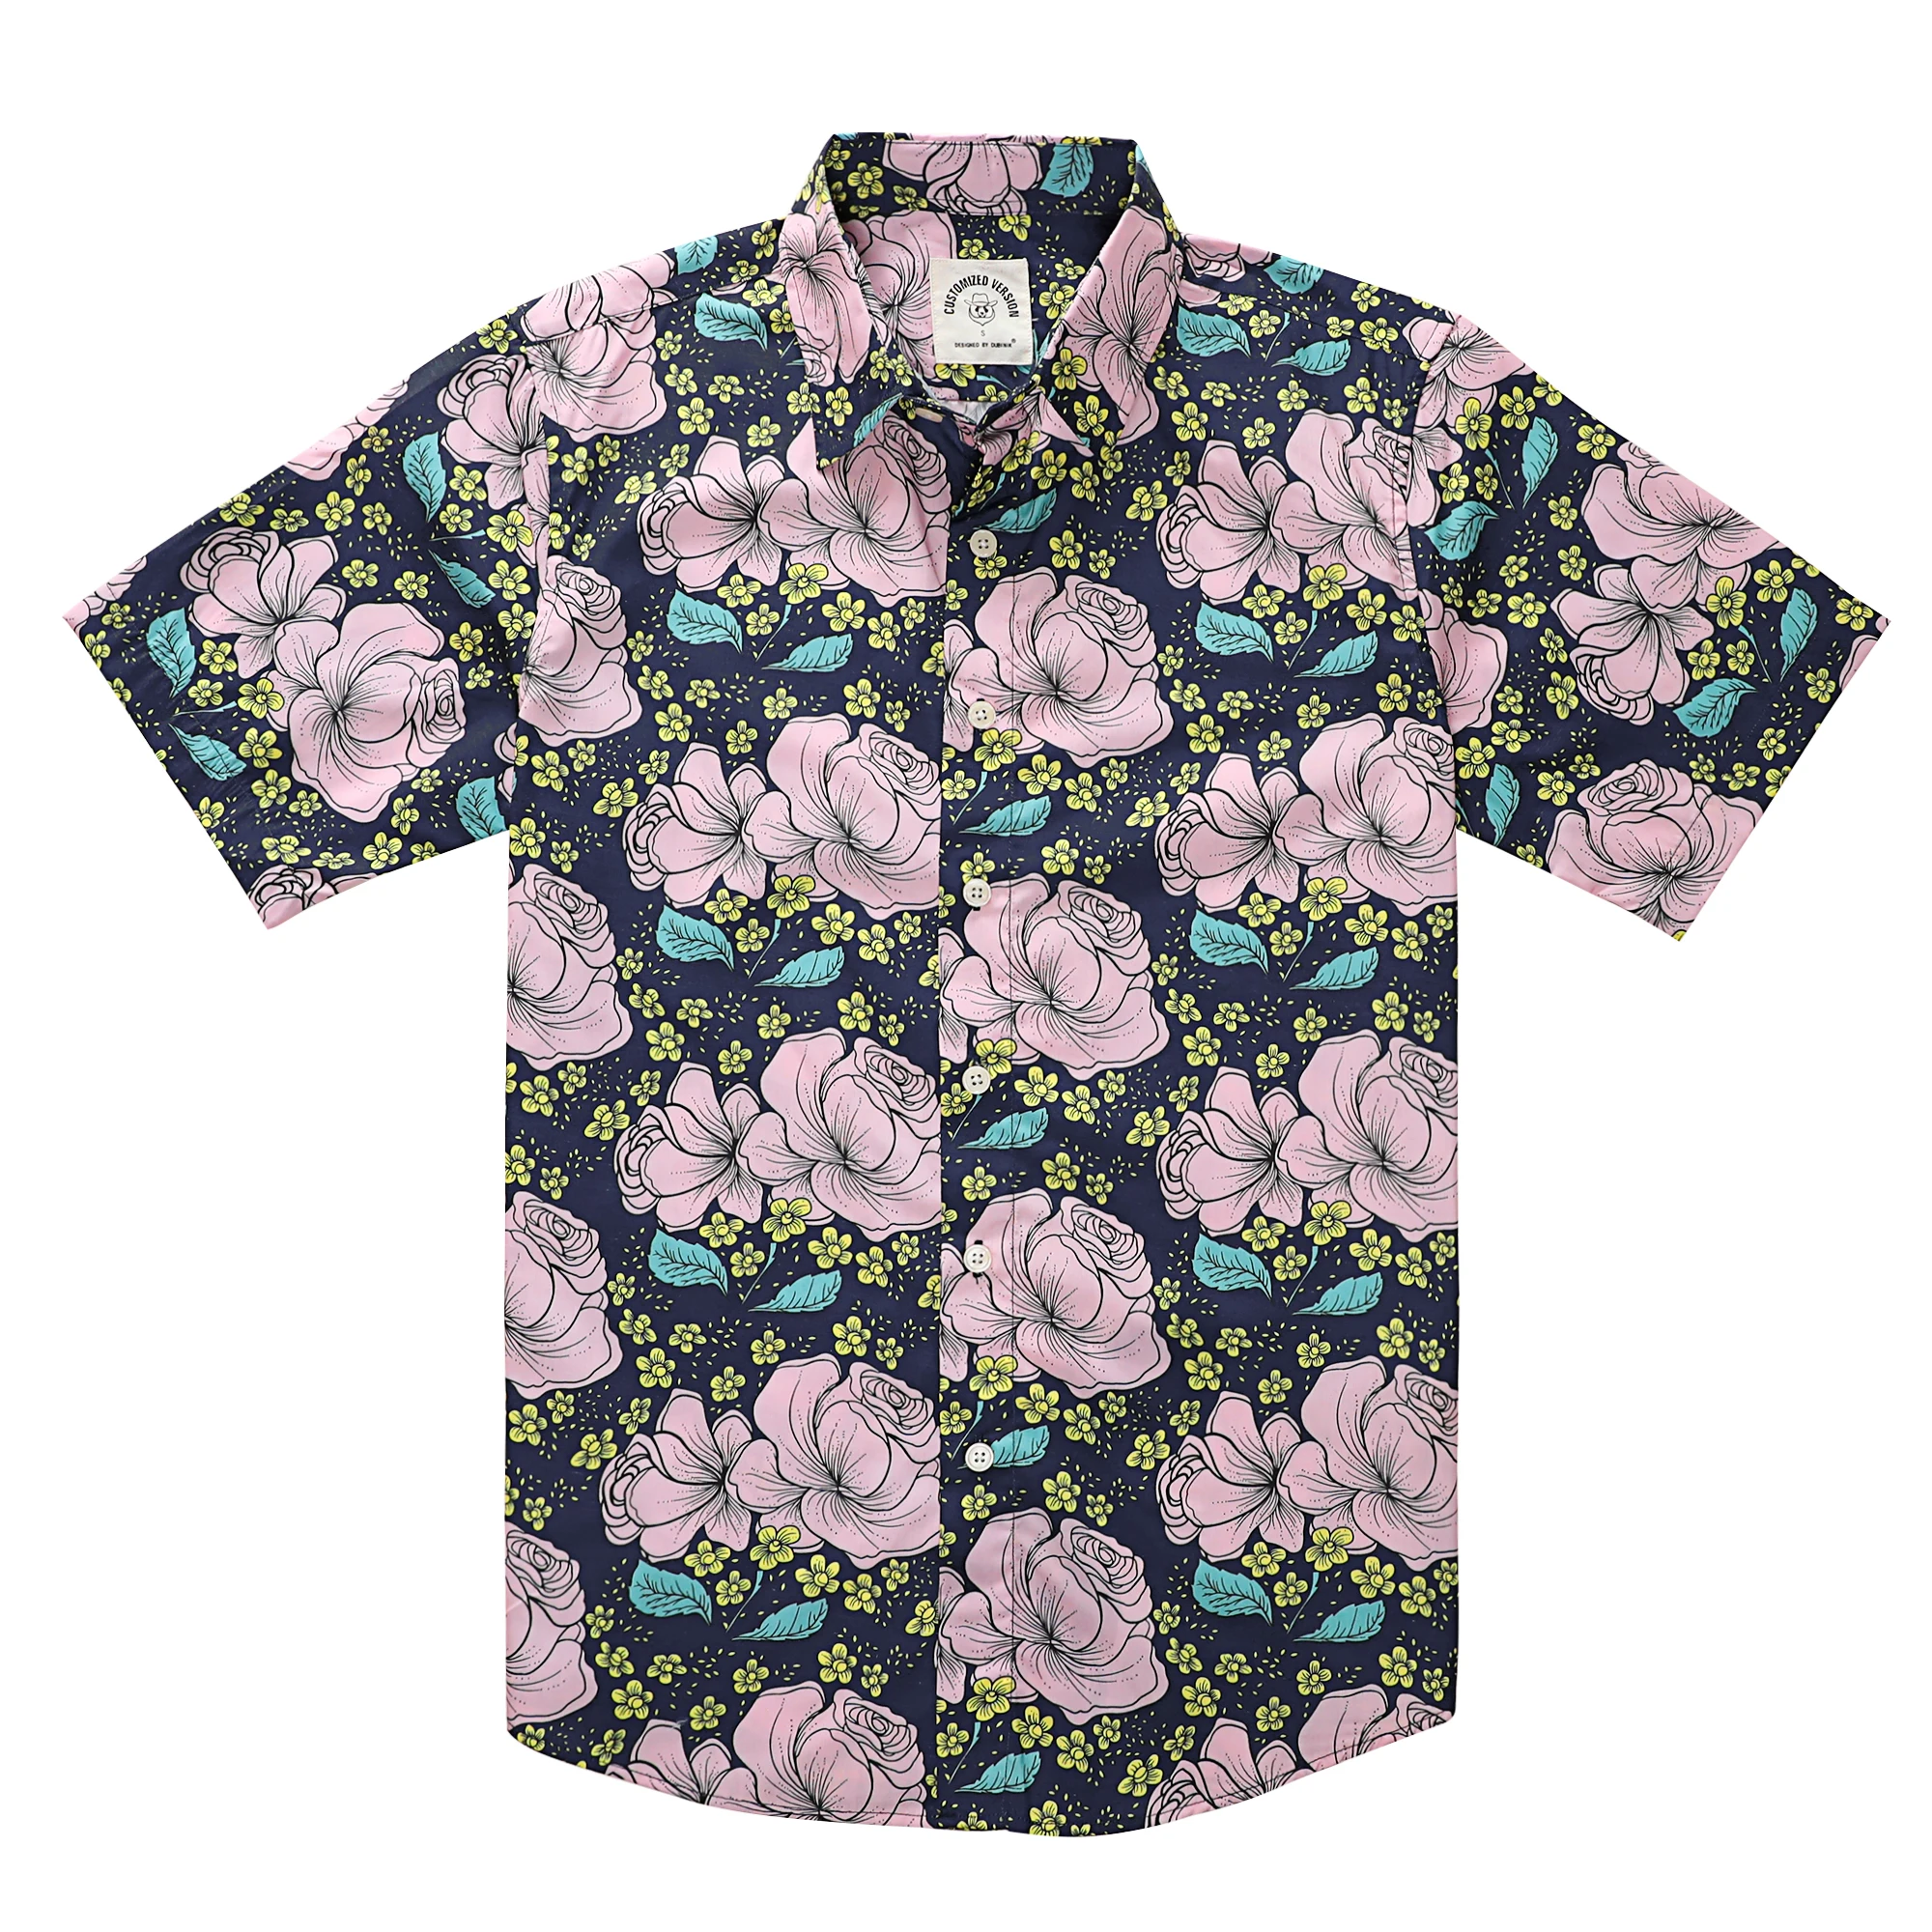 Dubinik havai gömleği Erkekler için Yaz Aloha Tropikal Plaj Kısa Kollu Düğme Aşağı Baskı Gömlek